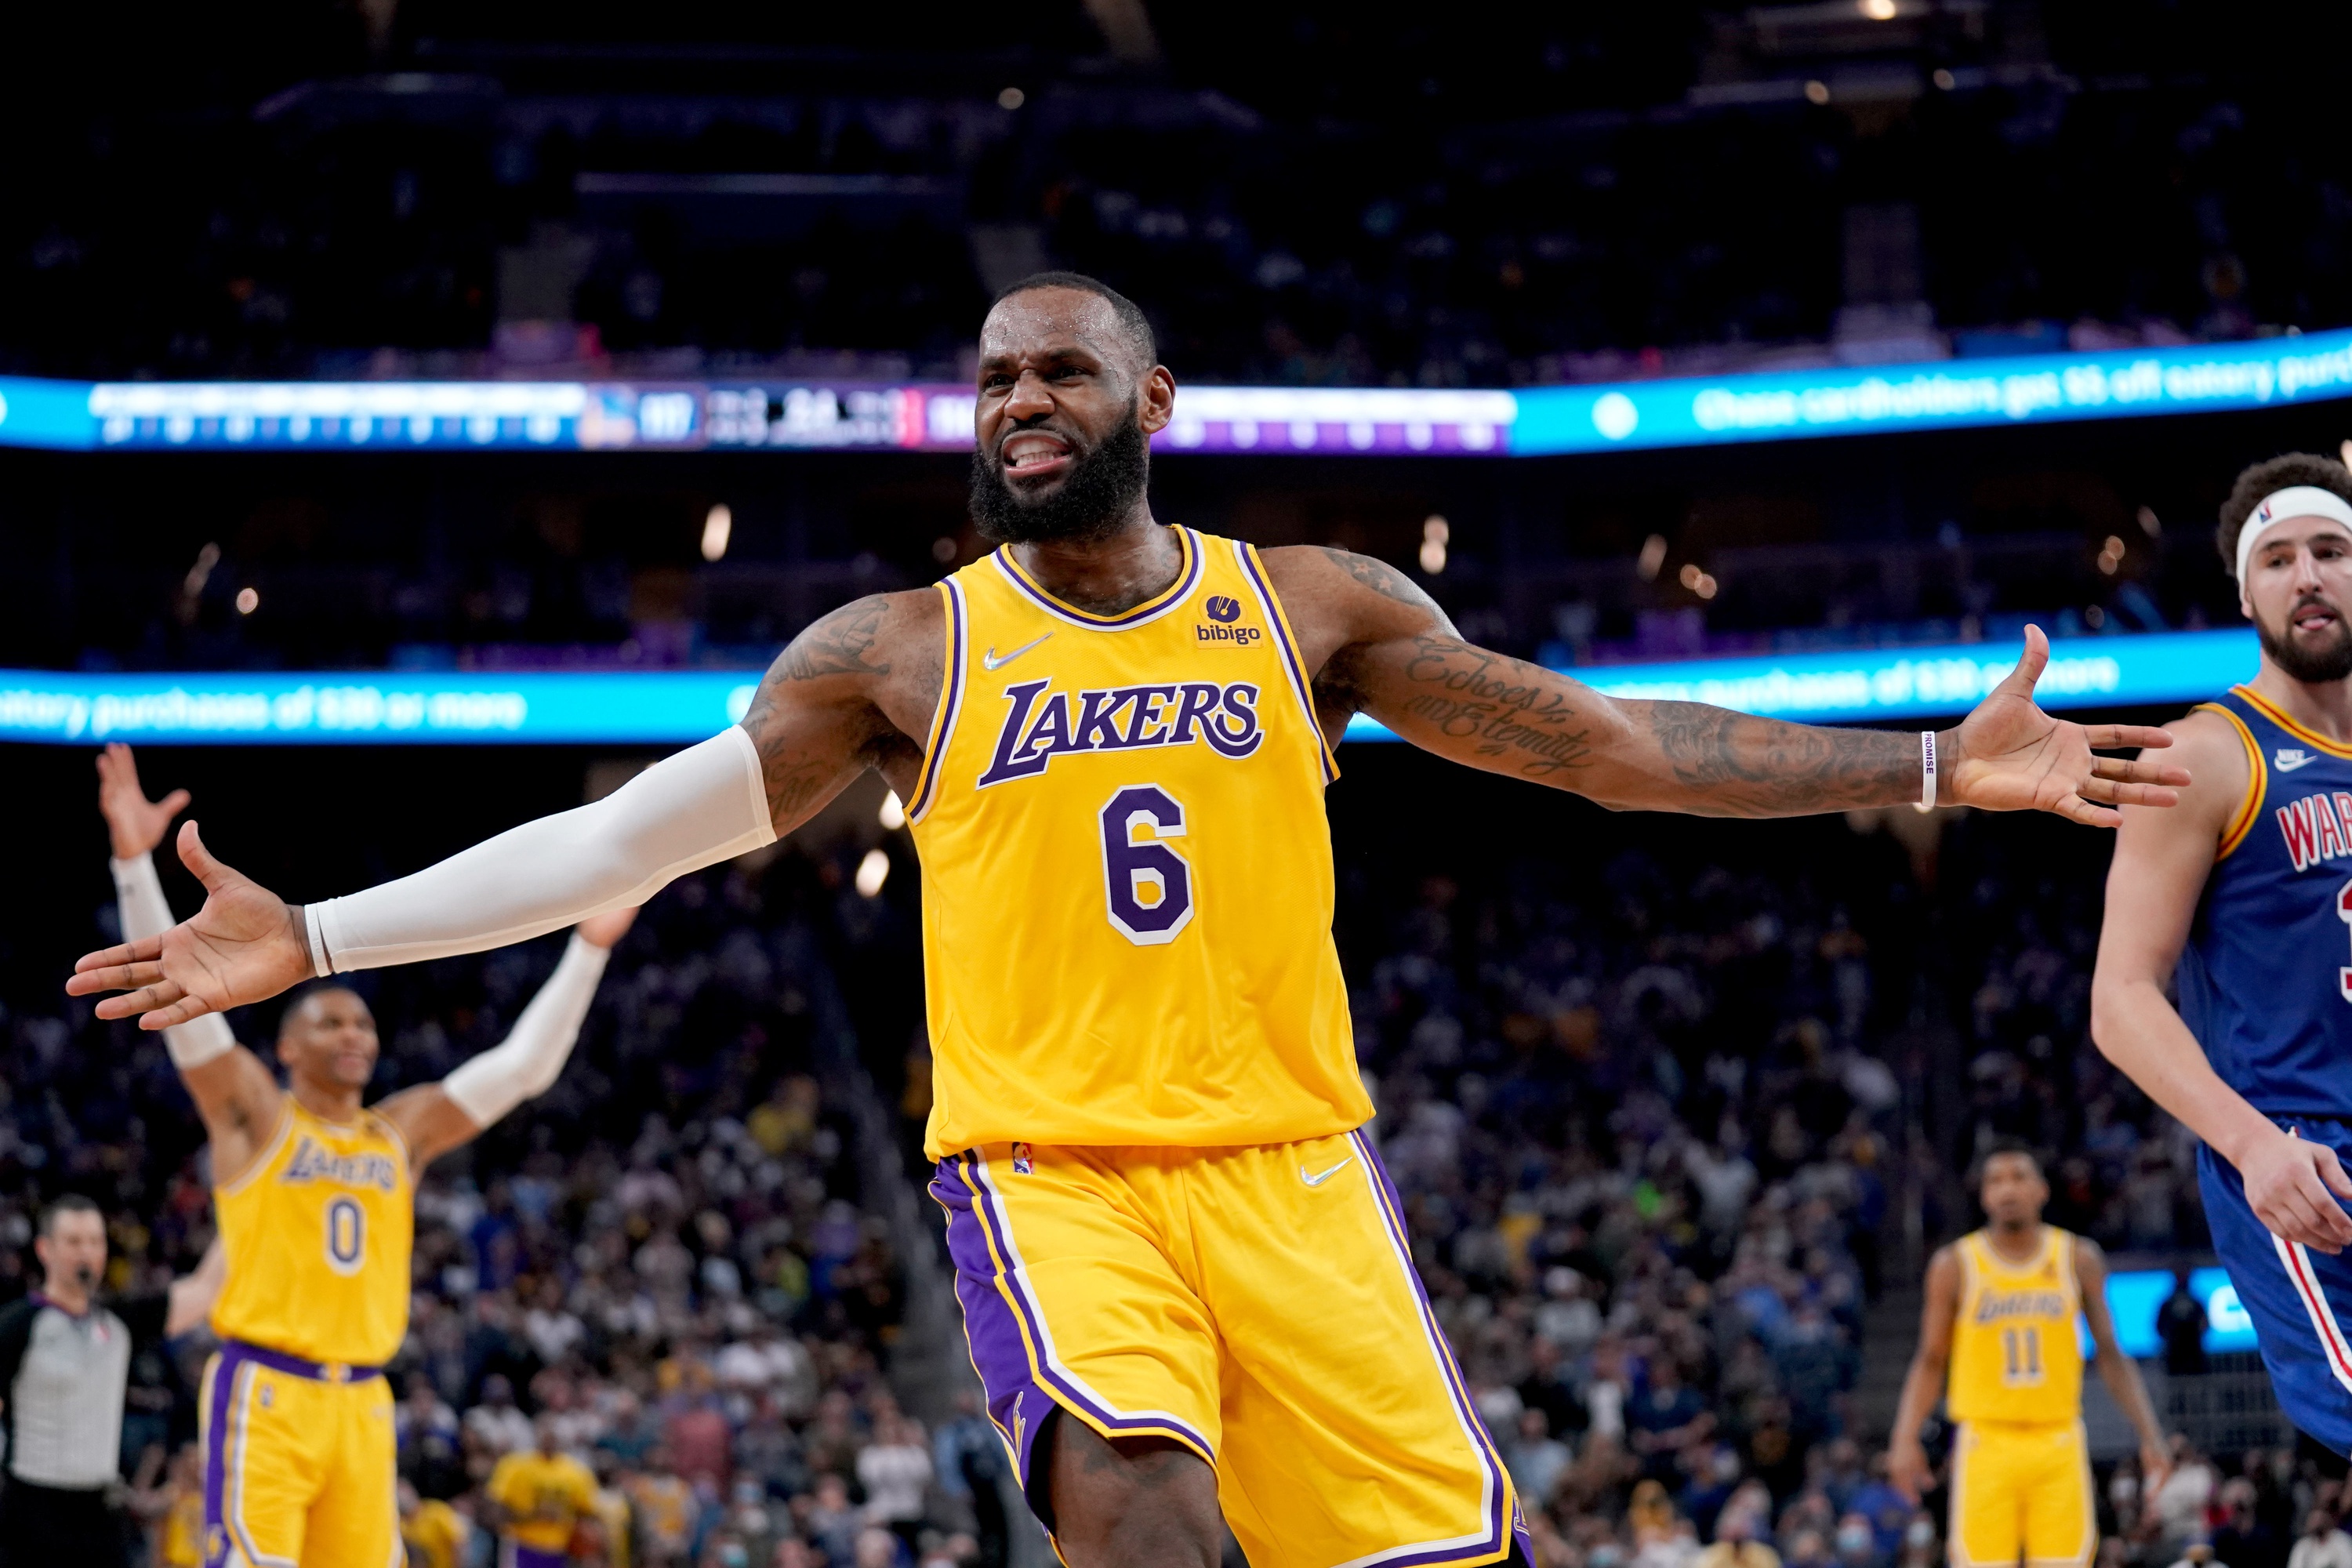 Warriors vs. Lakers prediction, odds, line, spread: 2022 NBA picks